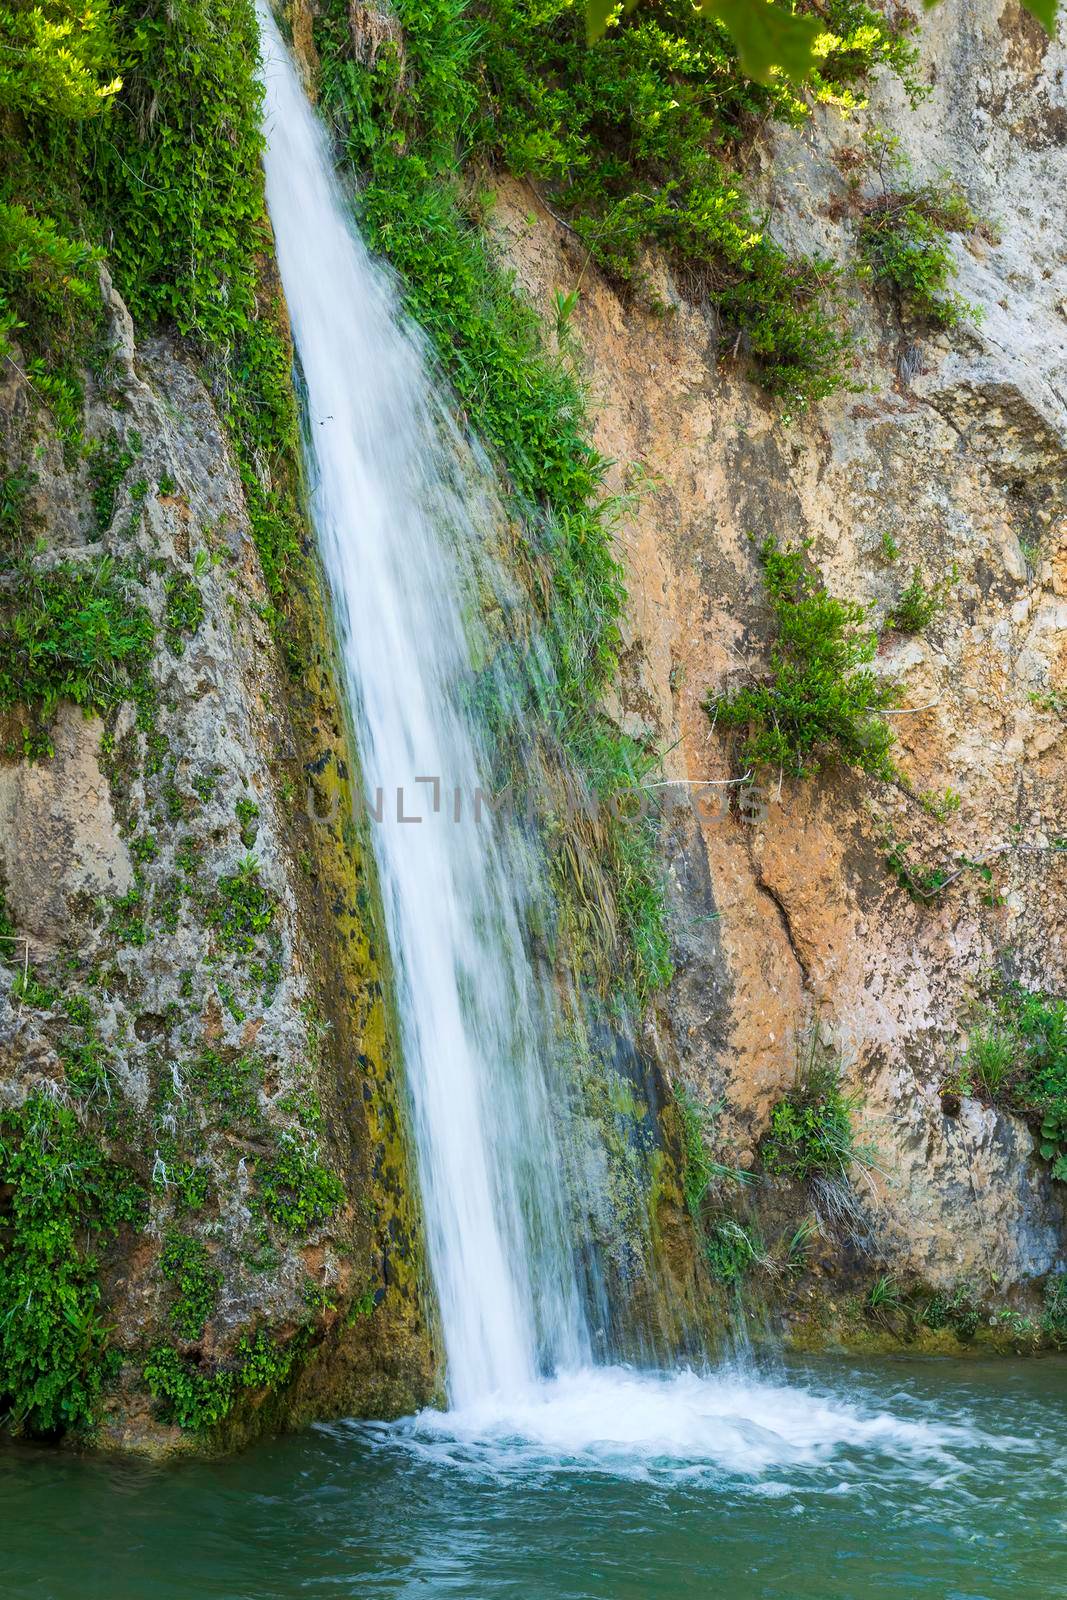 Beautiful waterfall at Drafi in Penteli mountain near Athens at Greece.